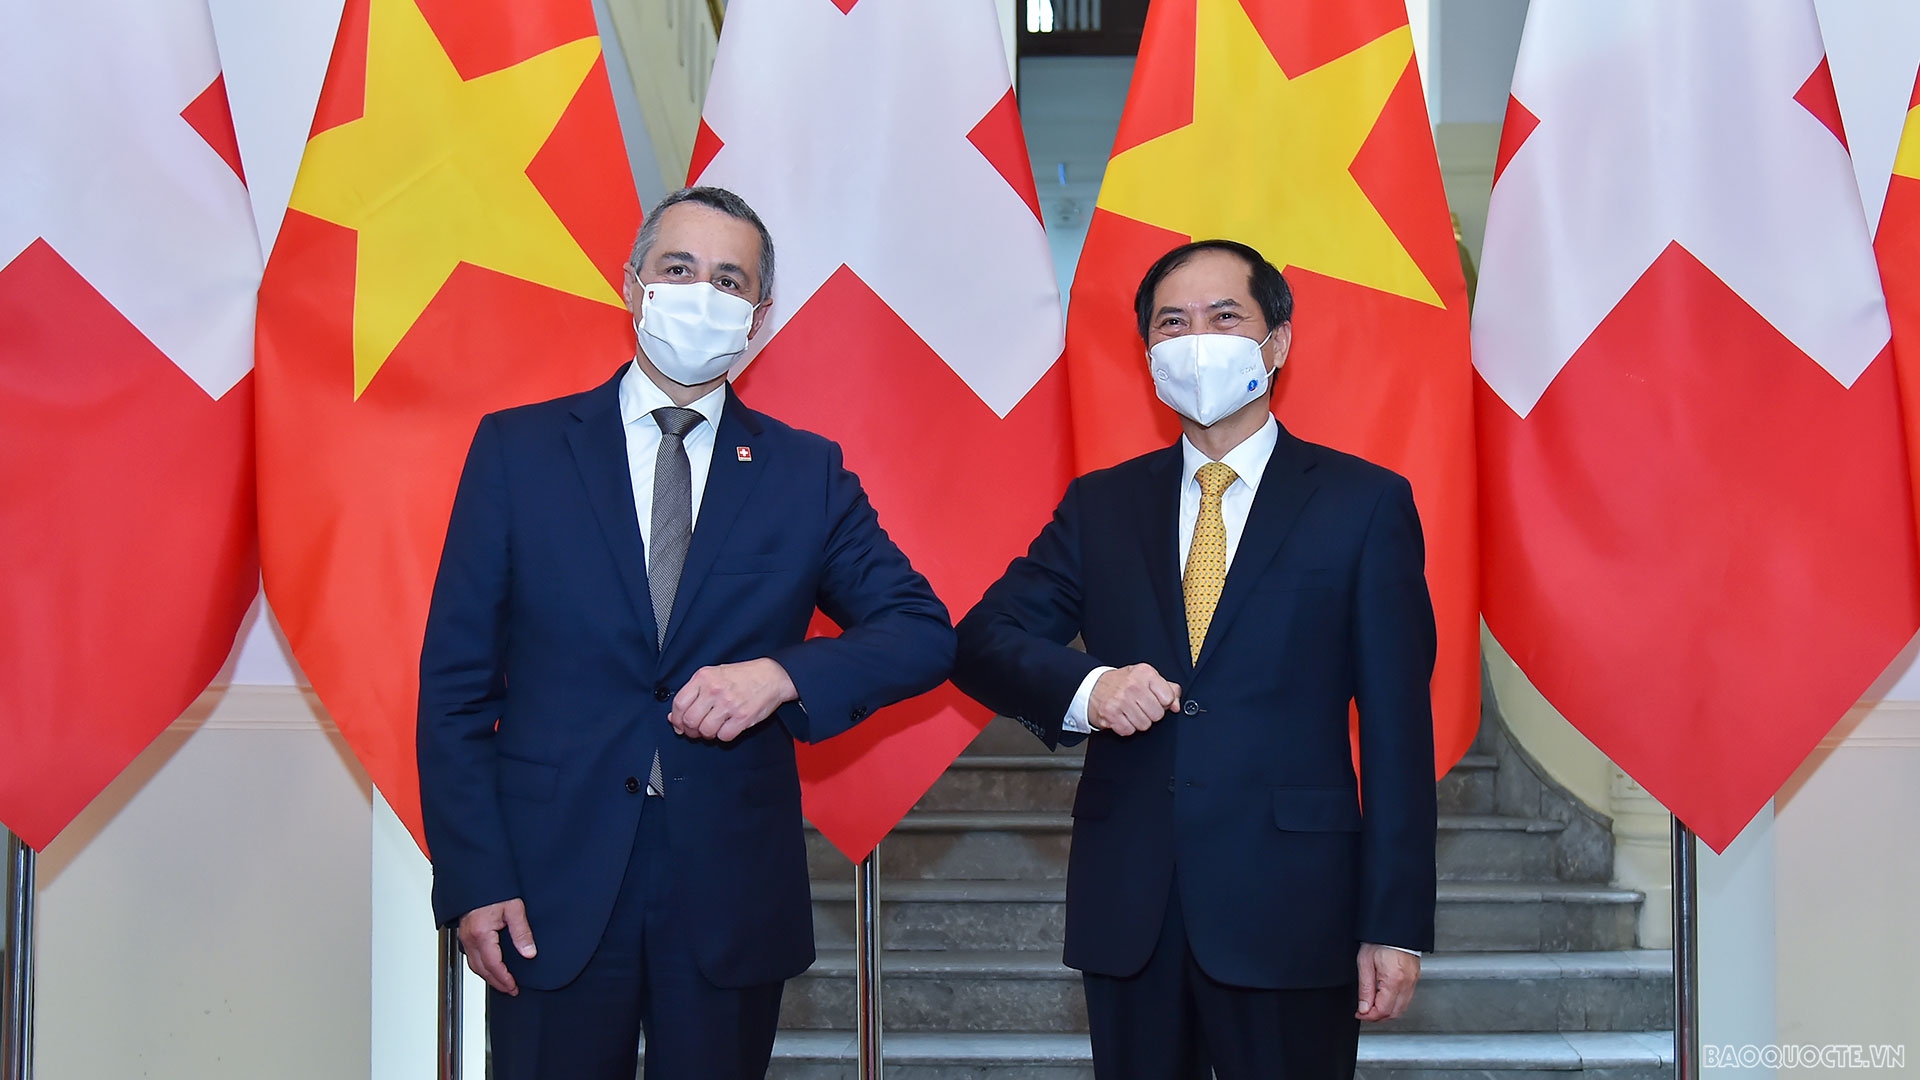 Phó Tổng thống, Bộ trưởng Ngoại giao Thụy Sỹ Ignazio Cassis thăm chính thức Việt Nam theo lời mời của Bộ trưởng Ngoại giao Bùi Thanh Sơn, tháng 8/2021. (Ảnh: Tuấn Anh)